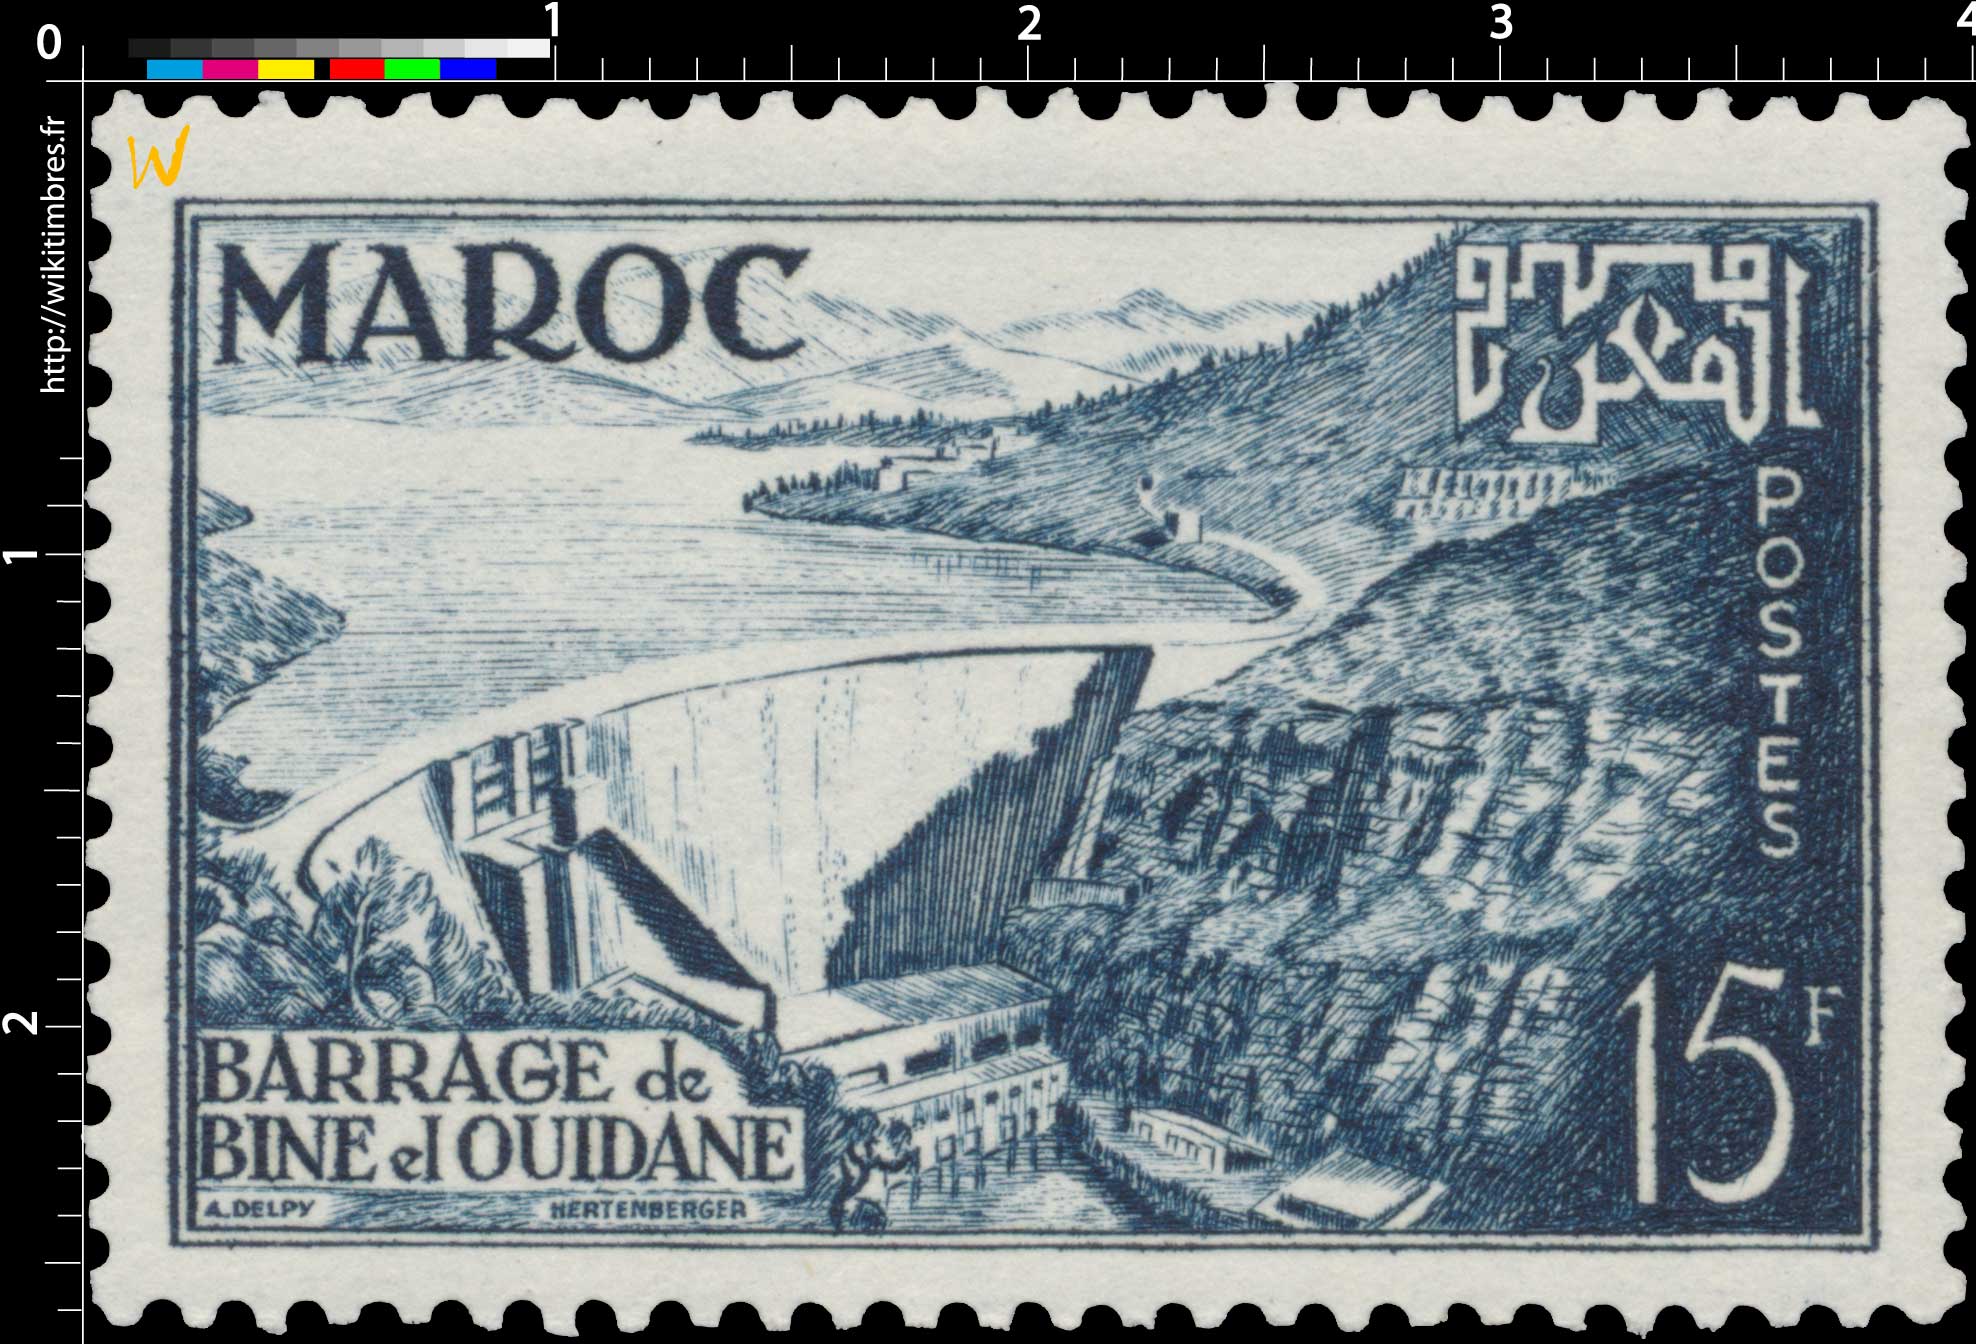 1953 Maroc - Inauguration du barrage de Bine El Ouidane